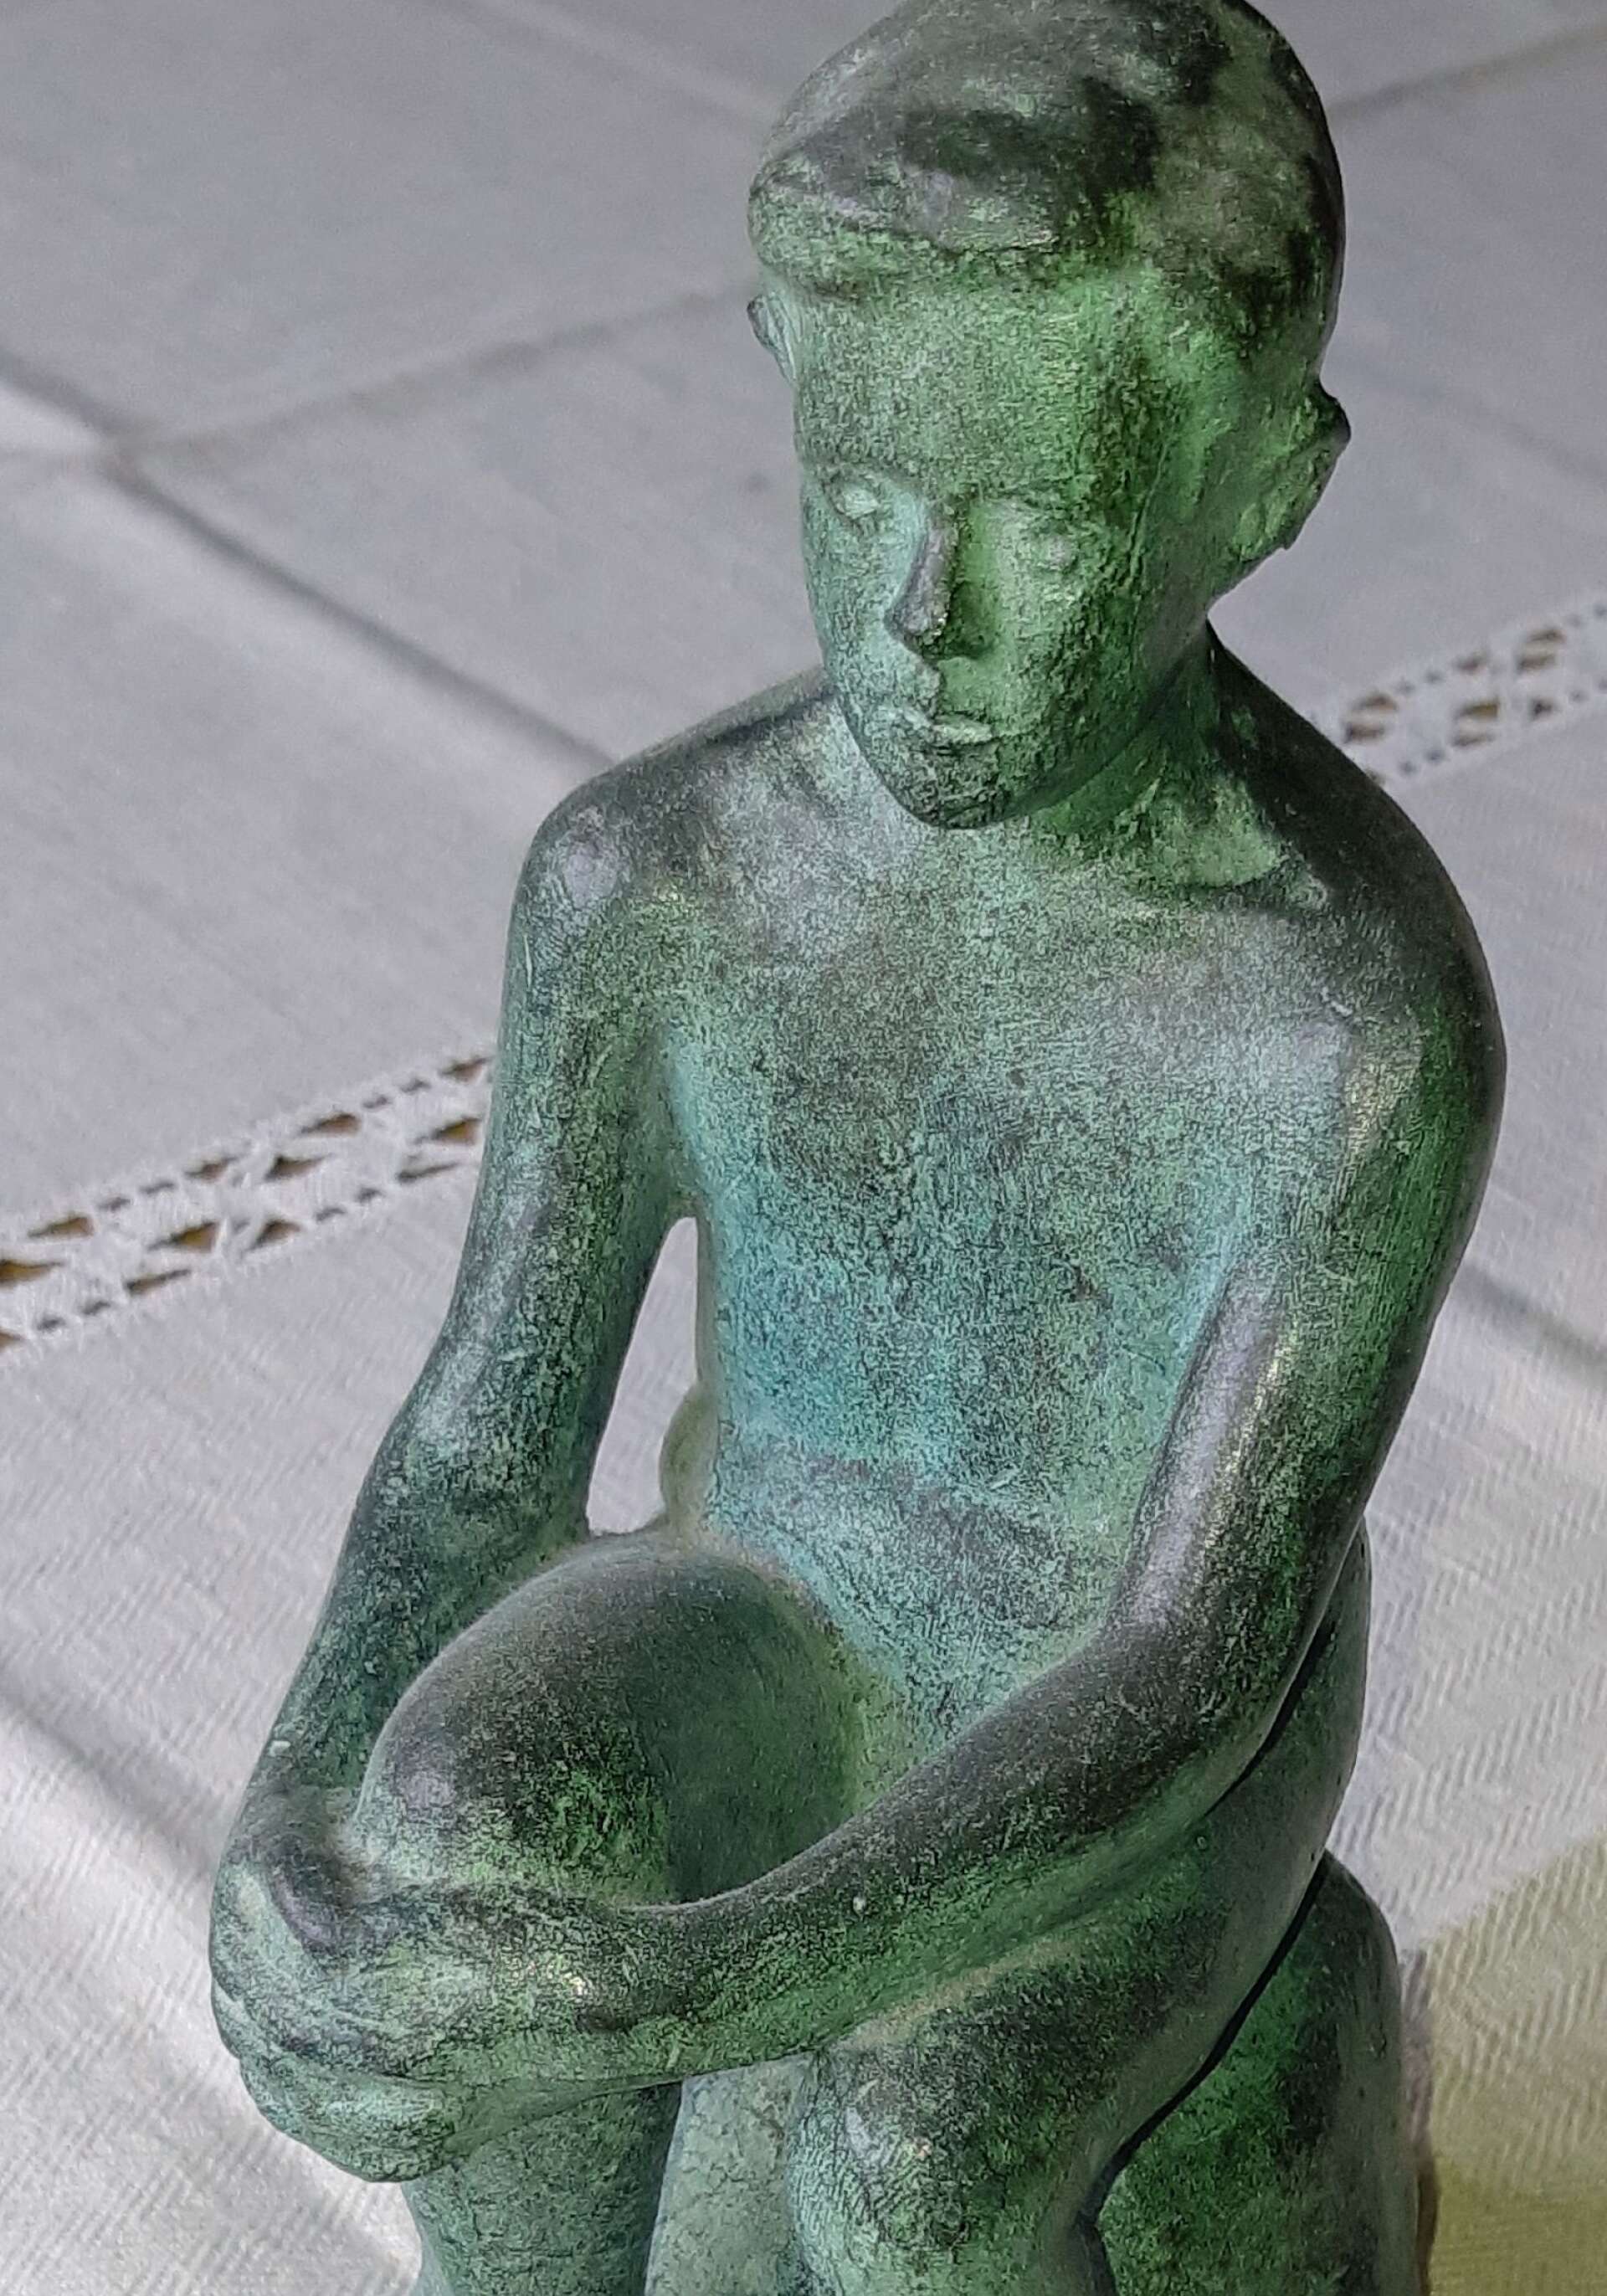 Redan 1952 gjorde Holger Andersson en studie som föregick skulpturen i fullformat. Detta är alltså Sittande pojke i miniatyrformat. 